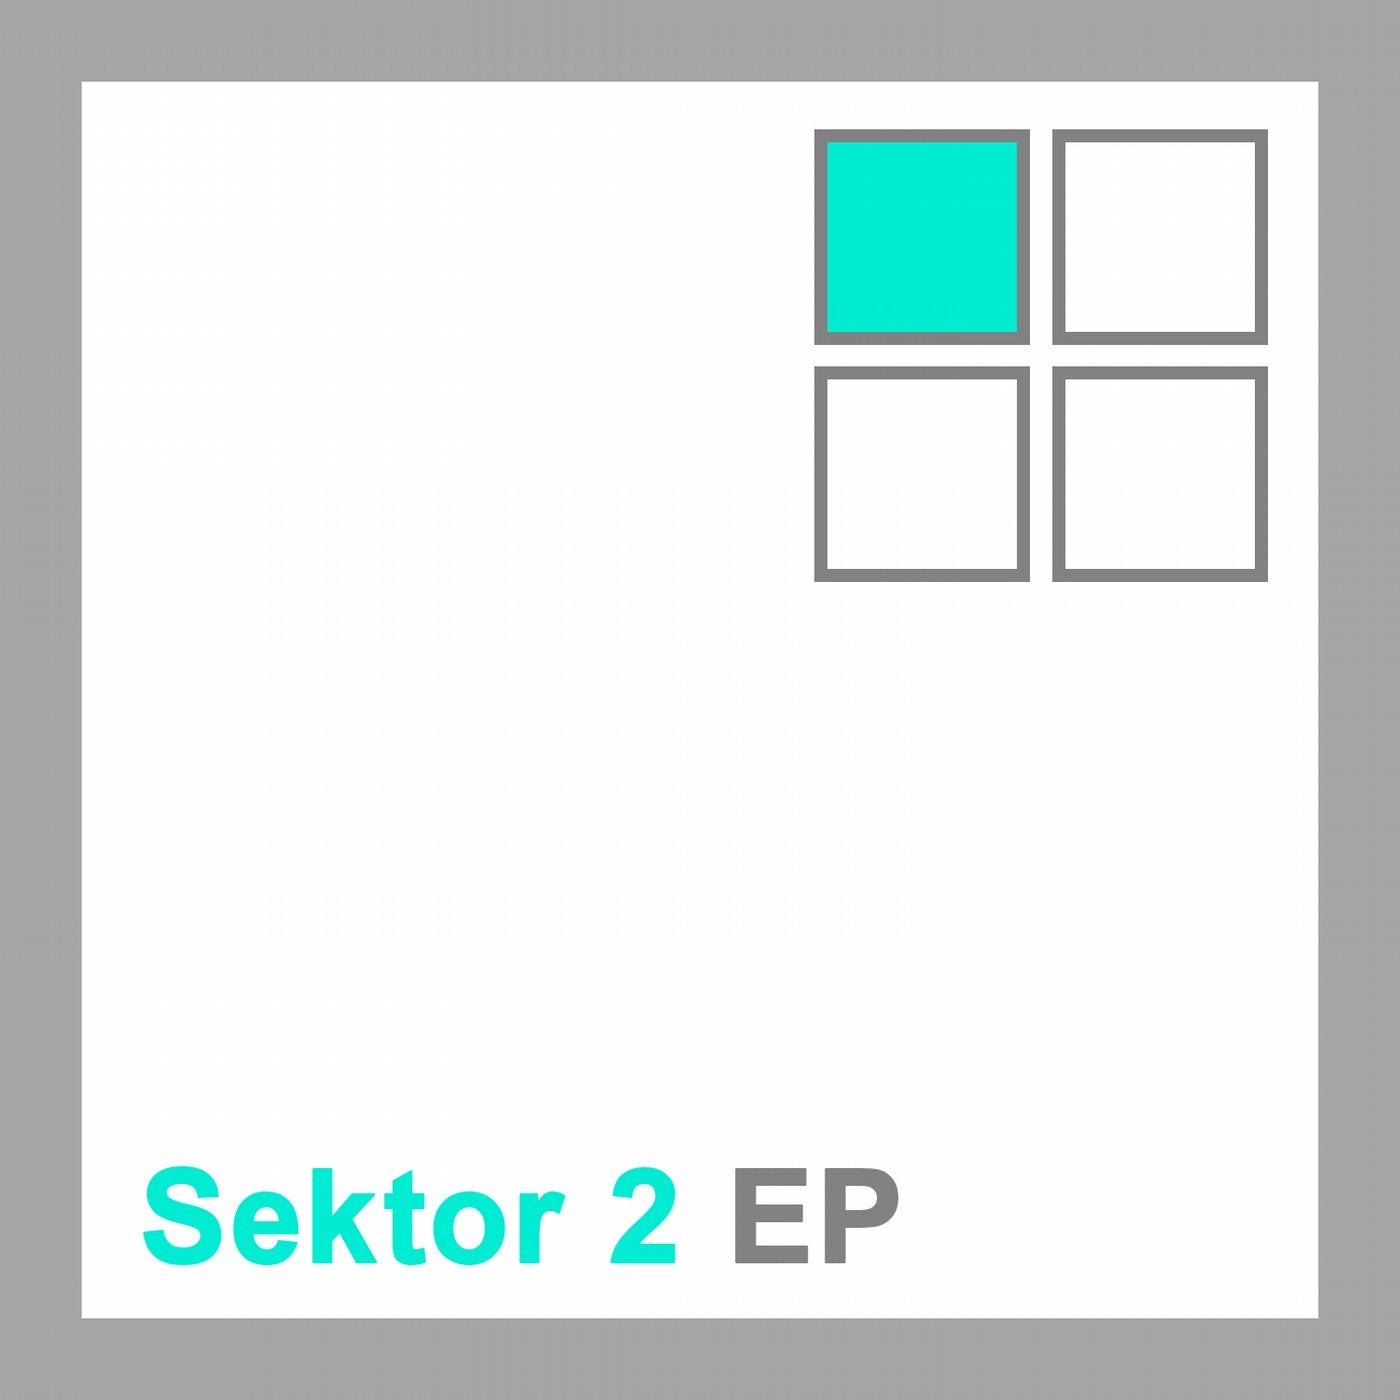 Sektor 2 EP